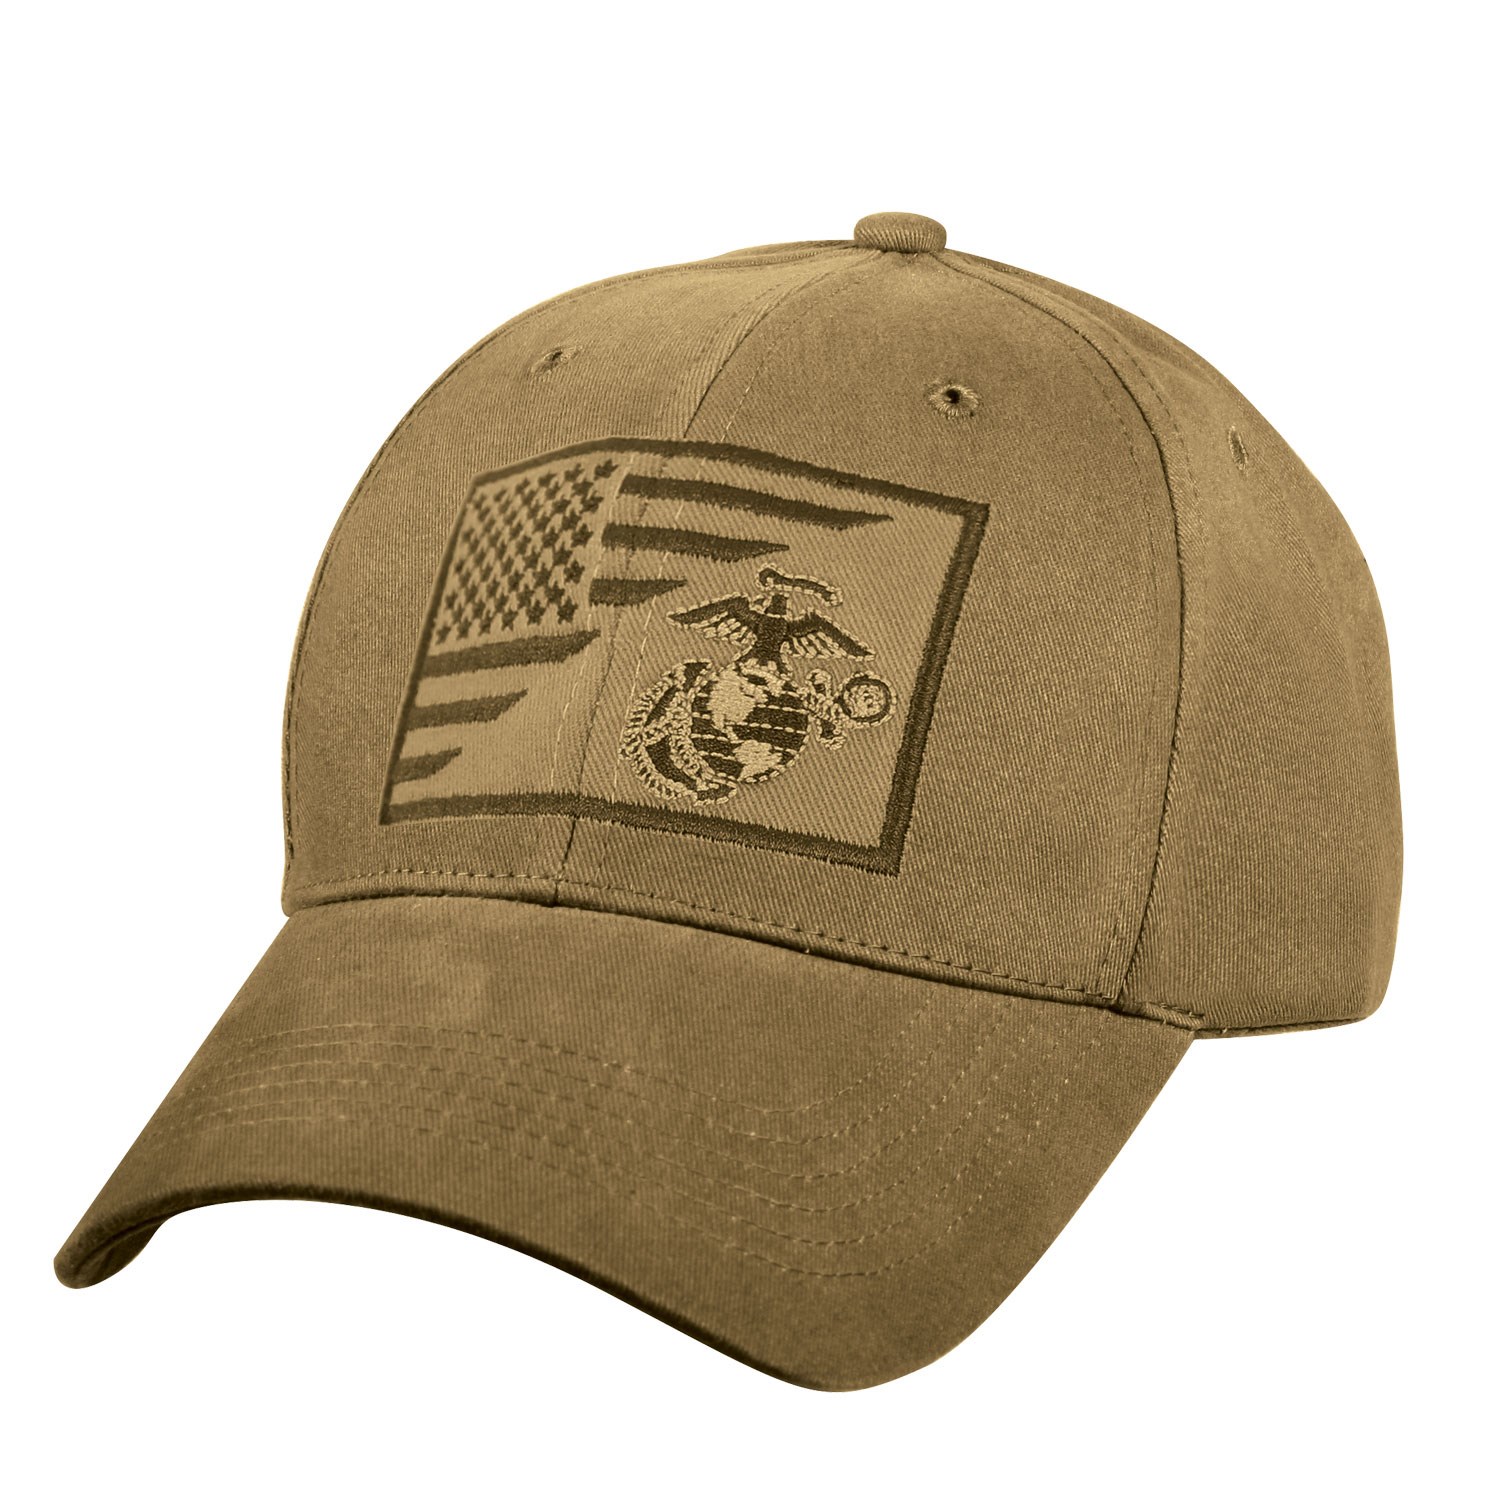 Čepice s vyšitým znakem USMC a US vlajky COYOTE